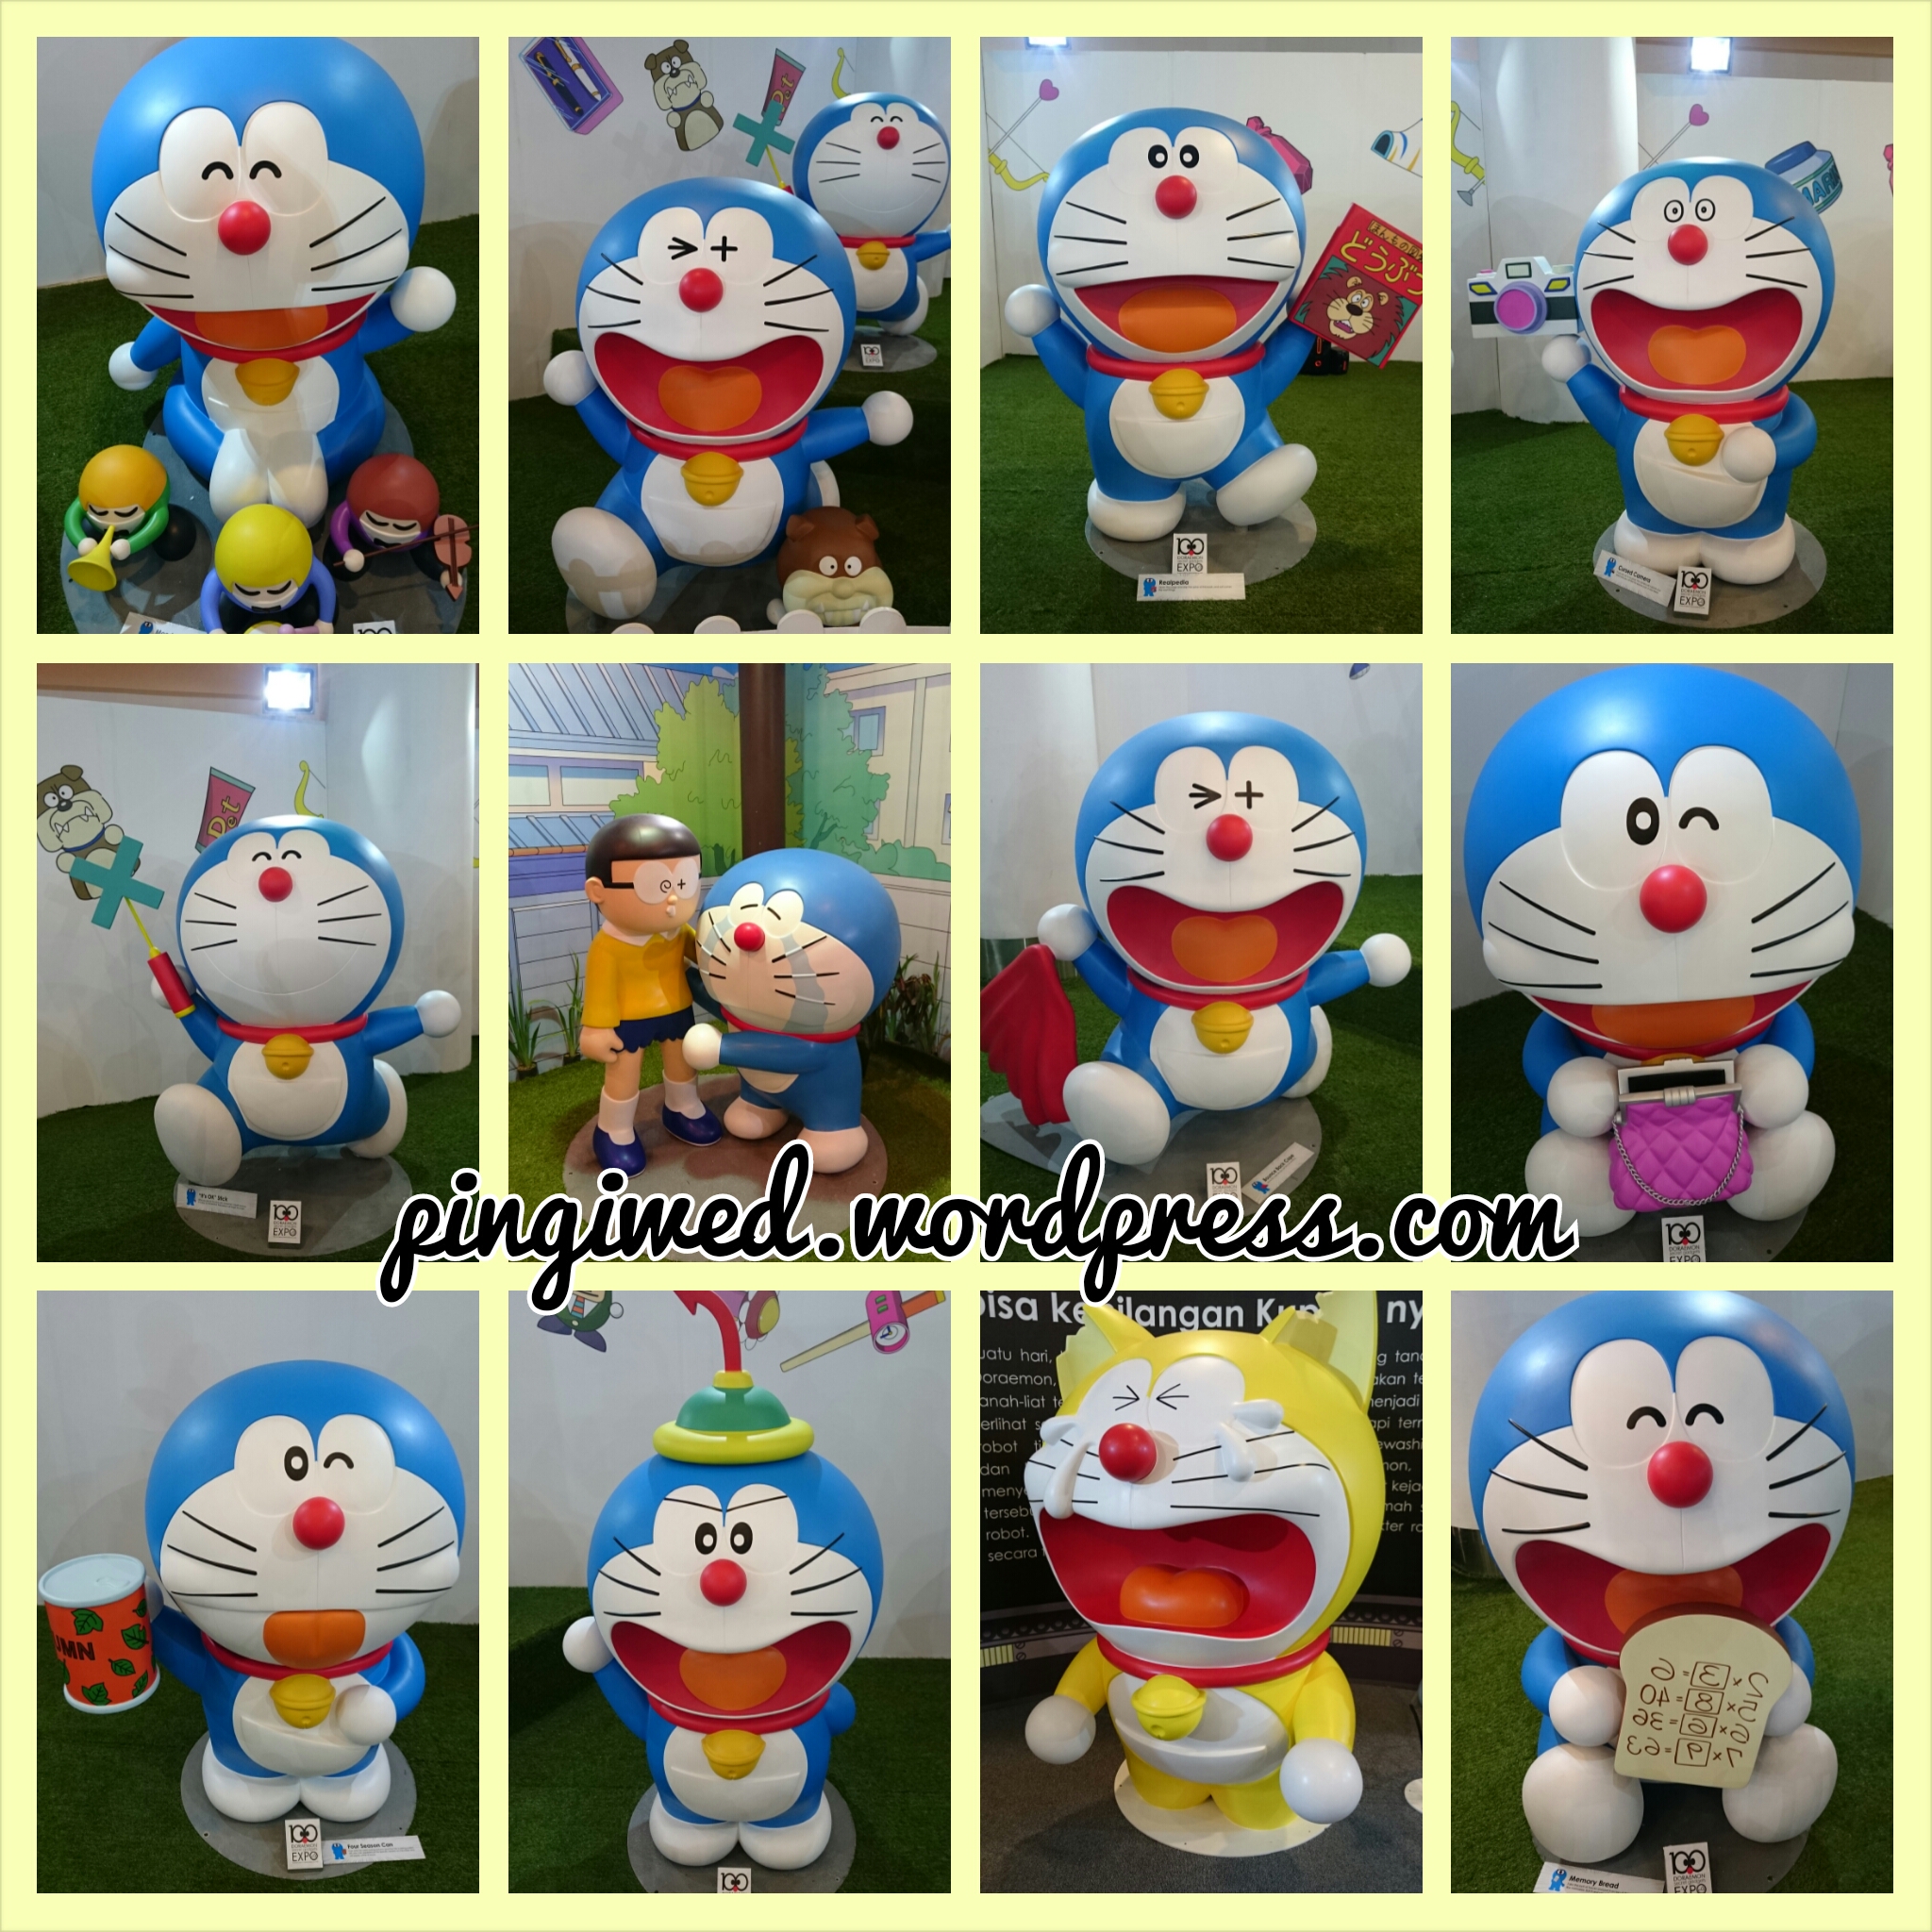 Gambar Lucu Boneka Doraemon Terlengkap Display Picture Keren